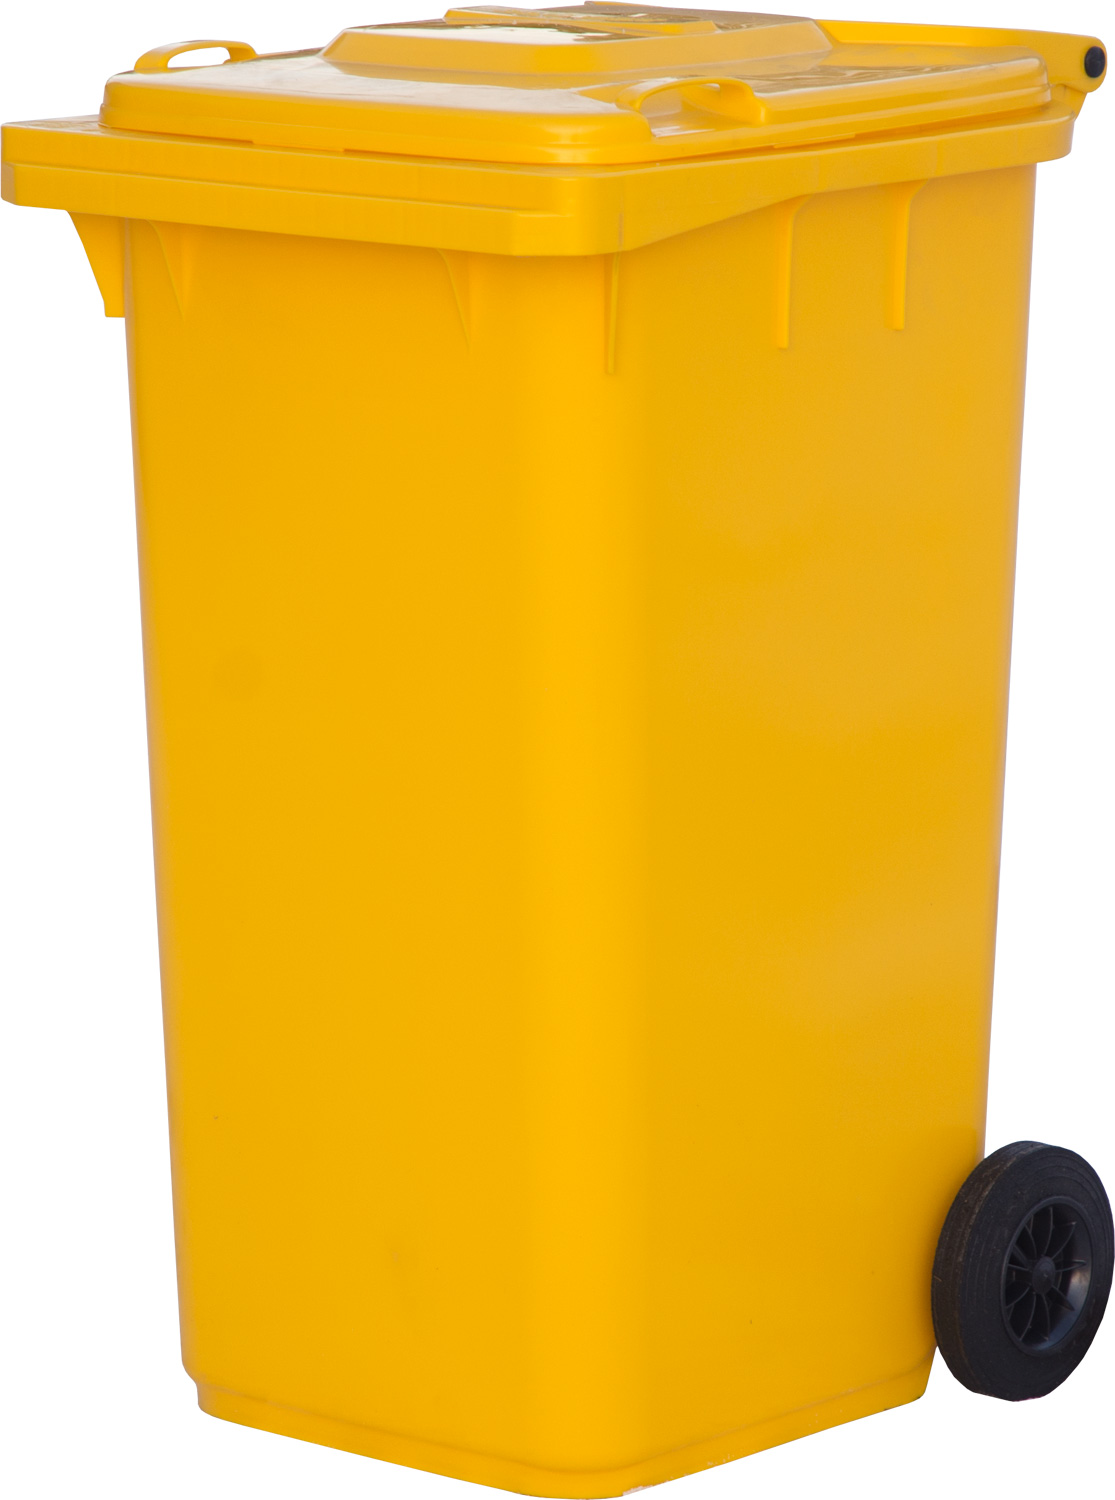 Мусорный контейнер МКТ 240 желтый для сбора мусора